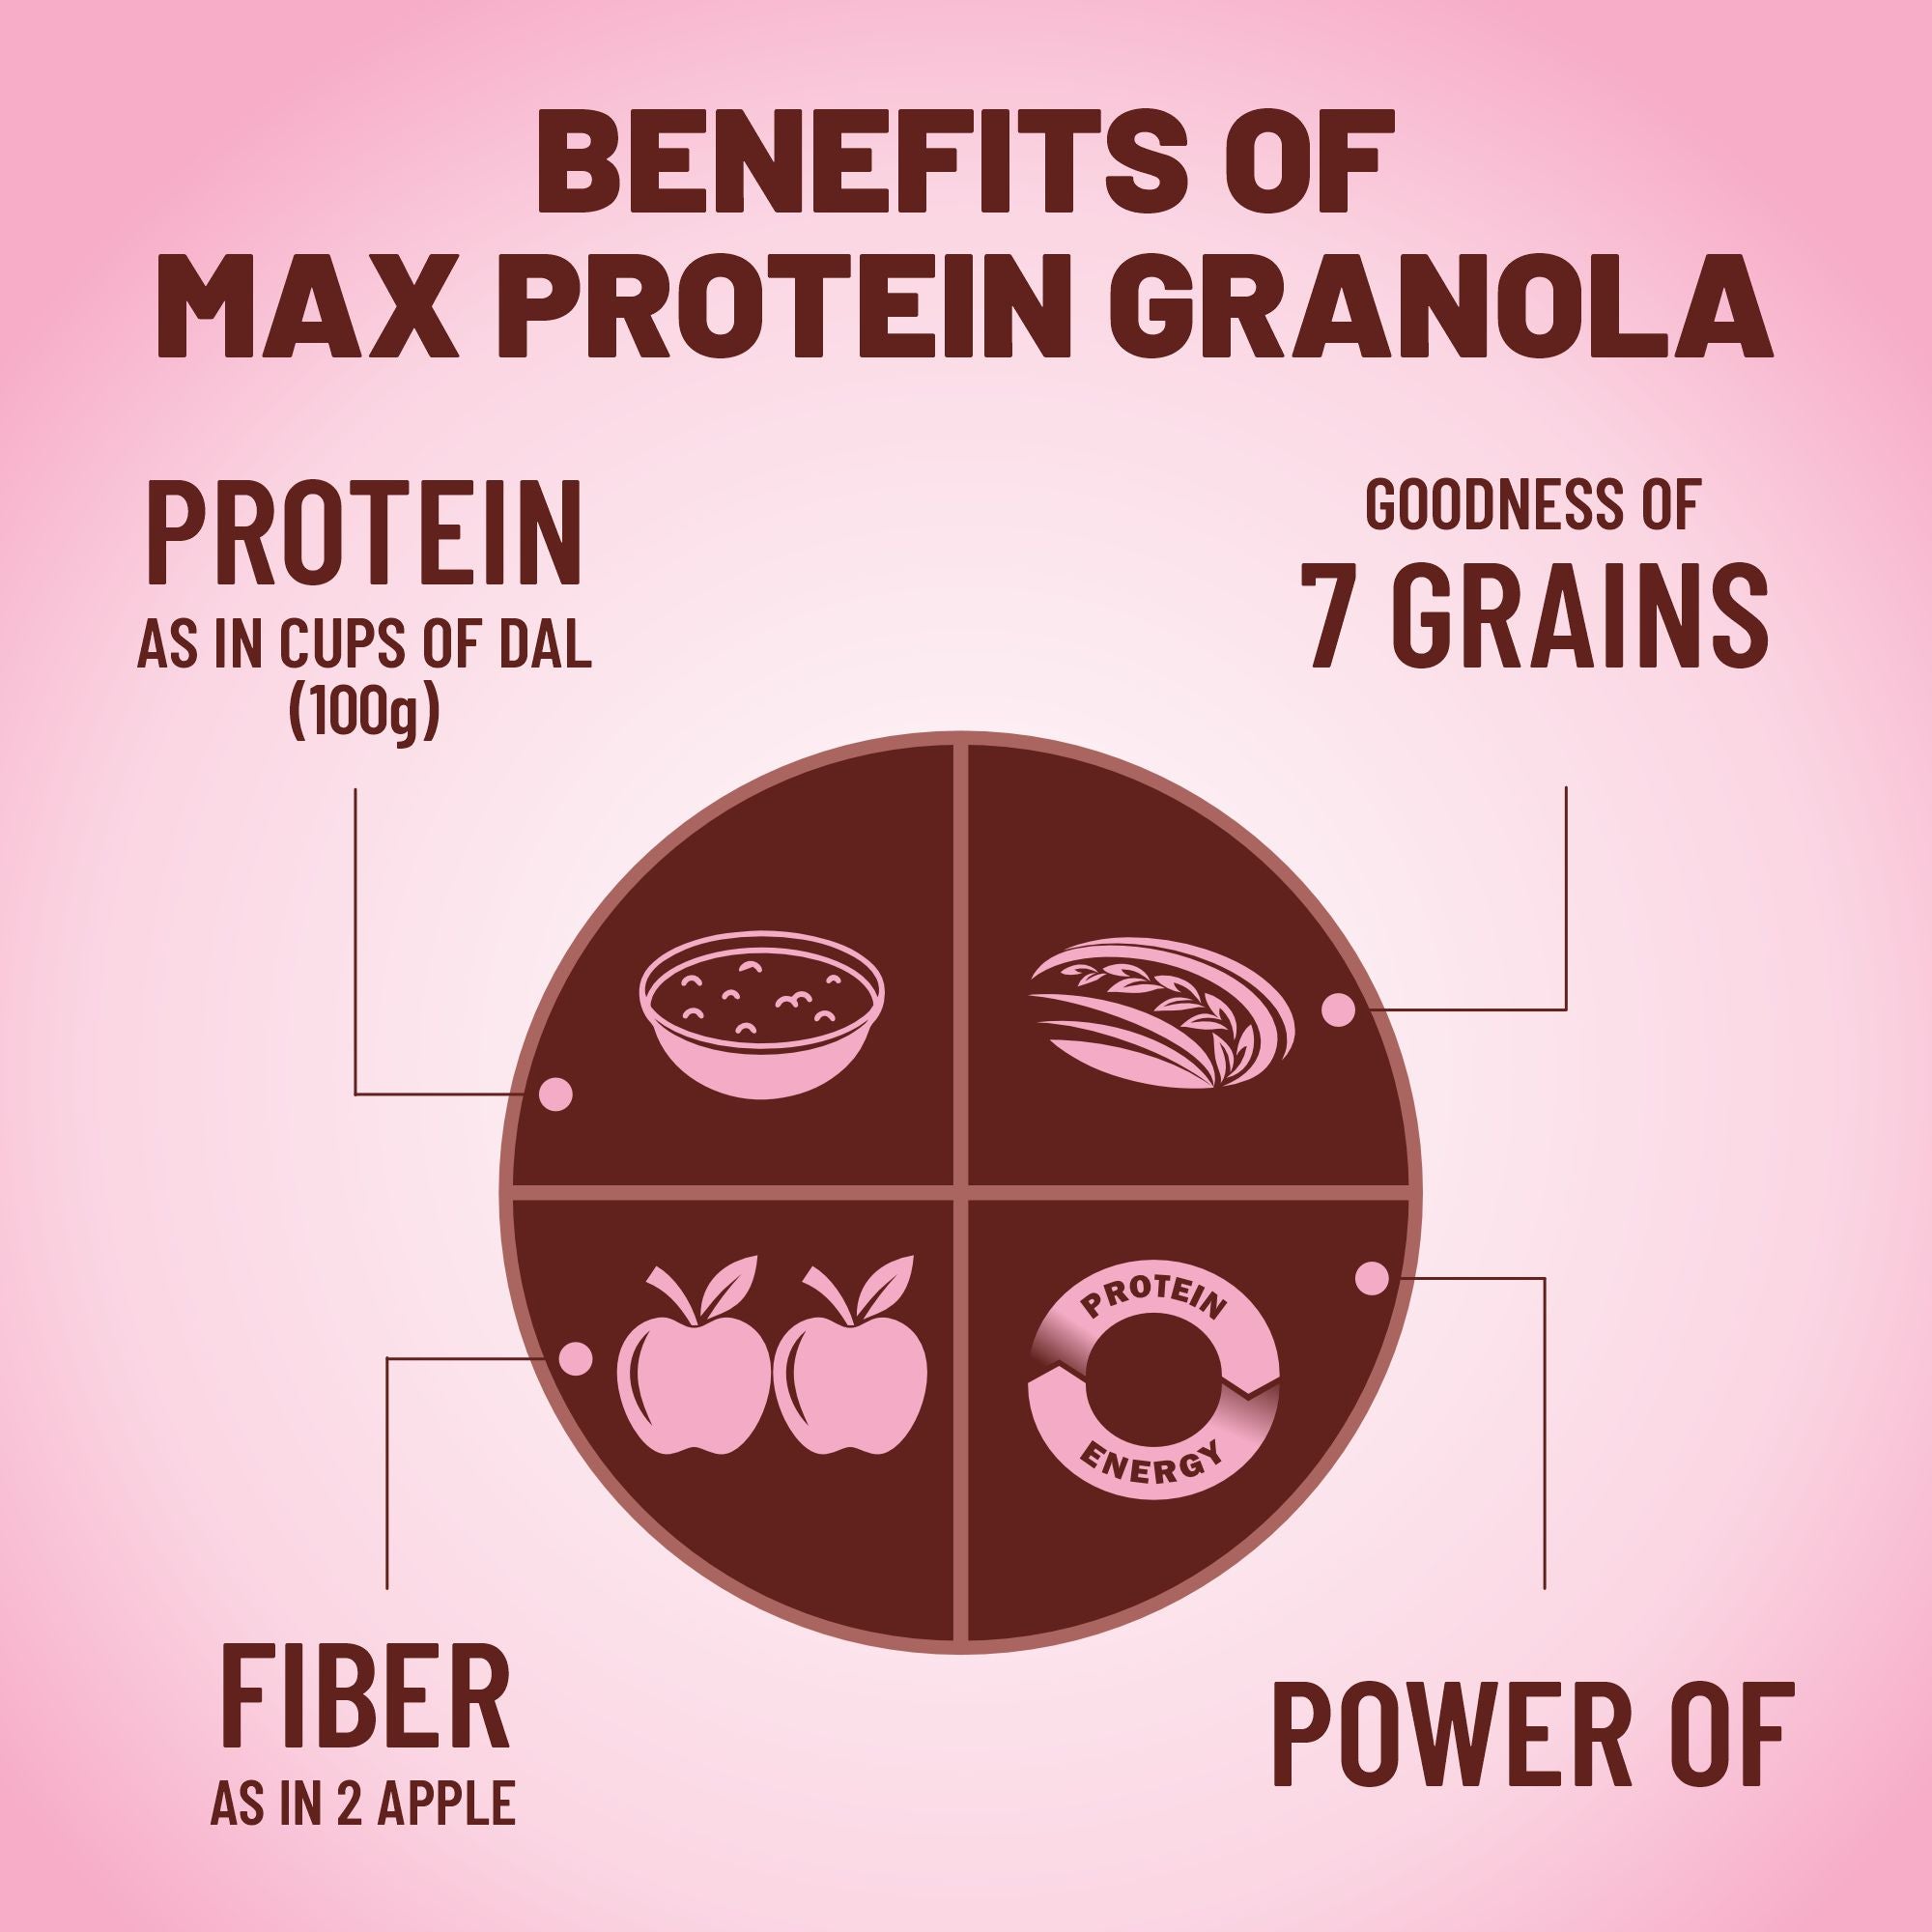 Max Protein Granola - No Added Sugar - 500g